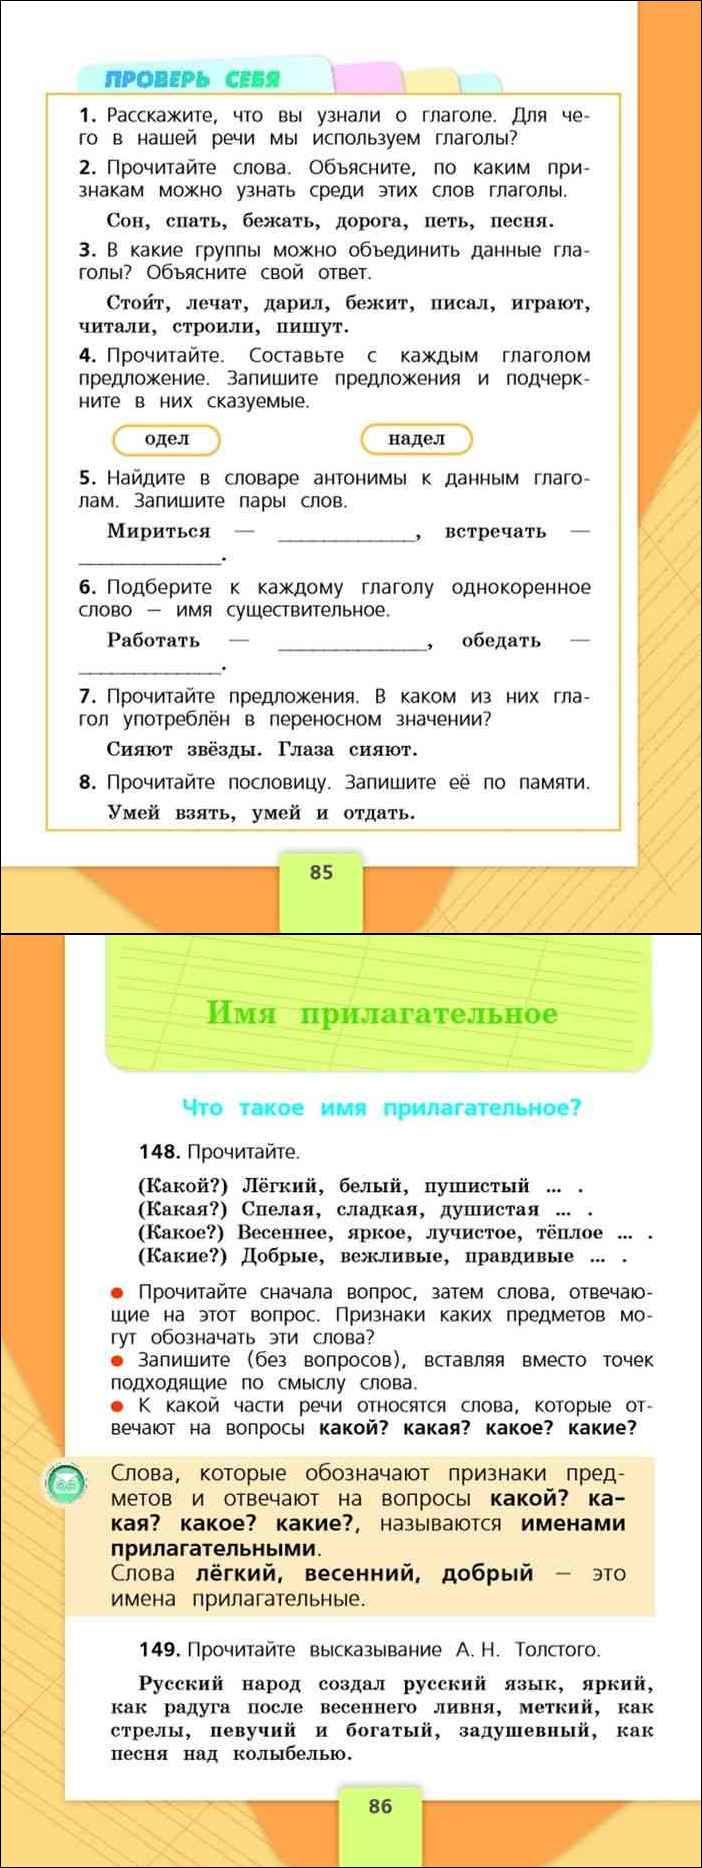 Решение на Номер 820 из ГДЗ по Русскому языку за 5 класс: Разумовская М.М.